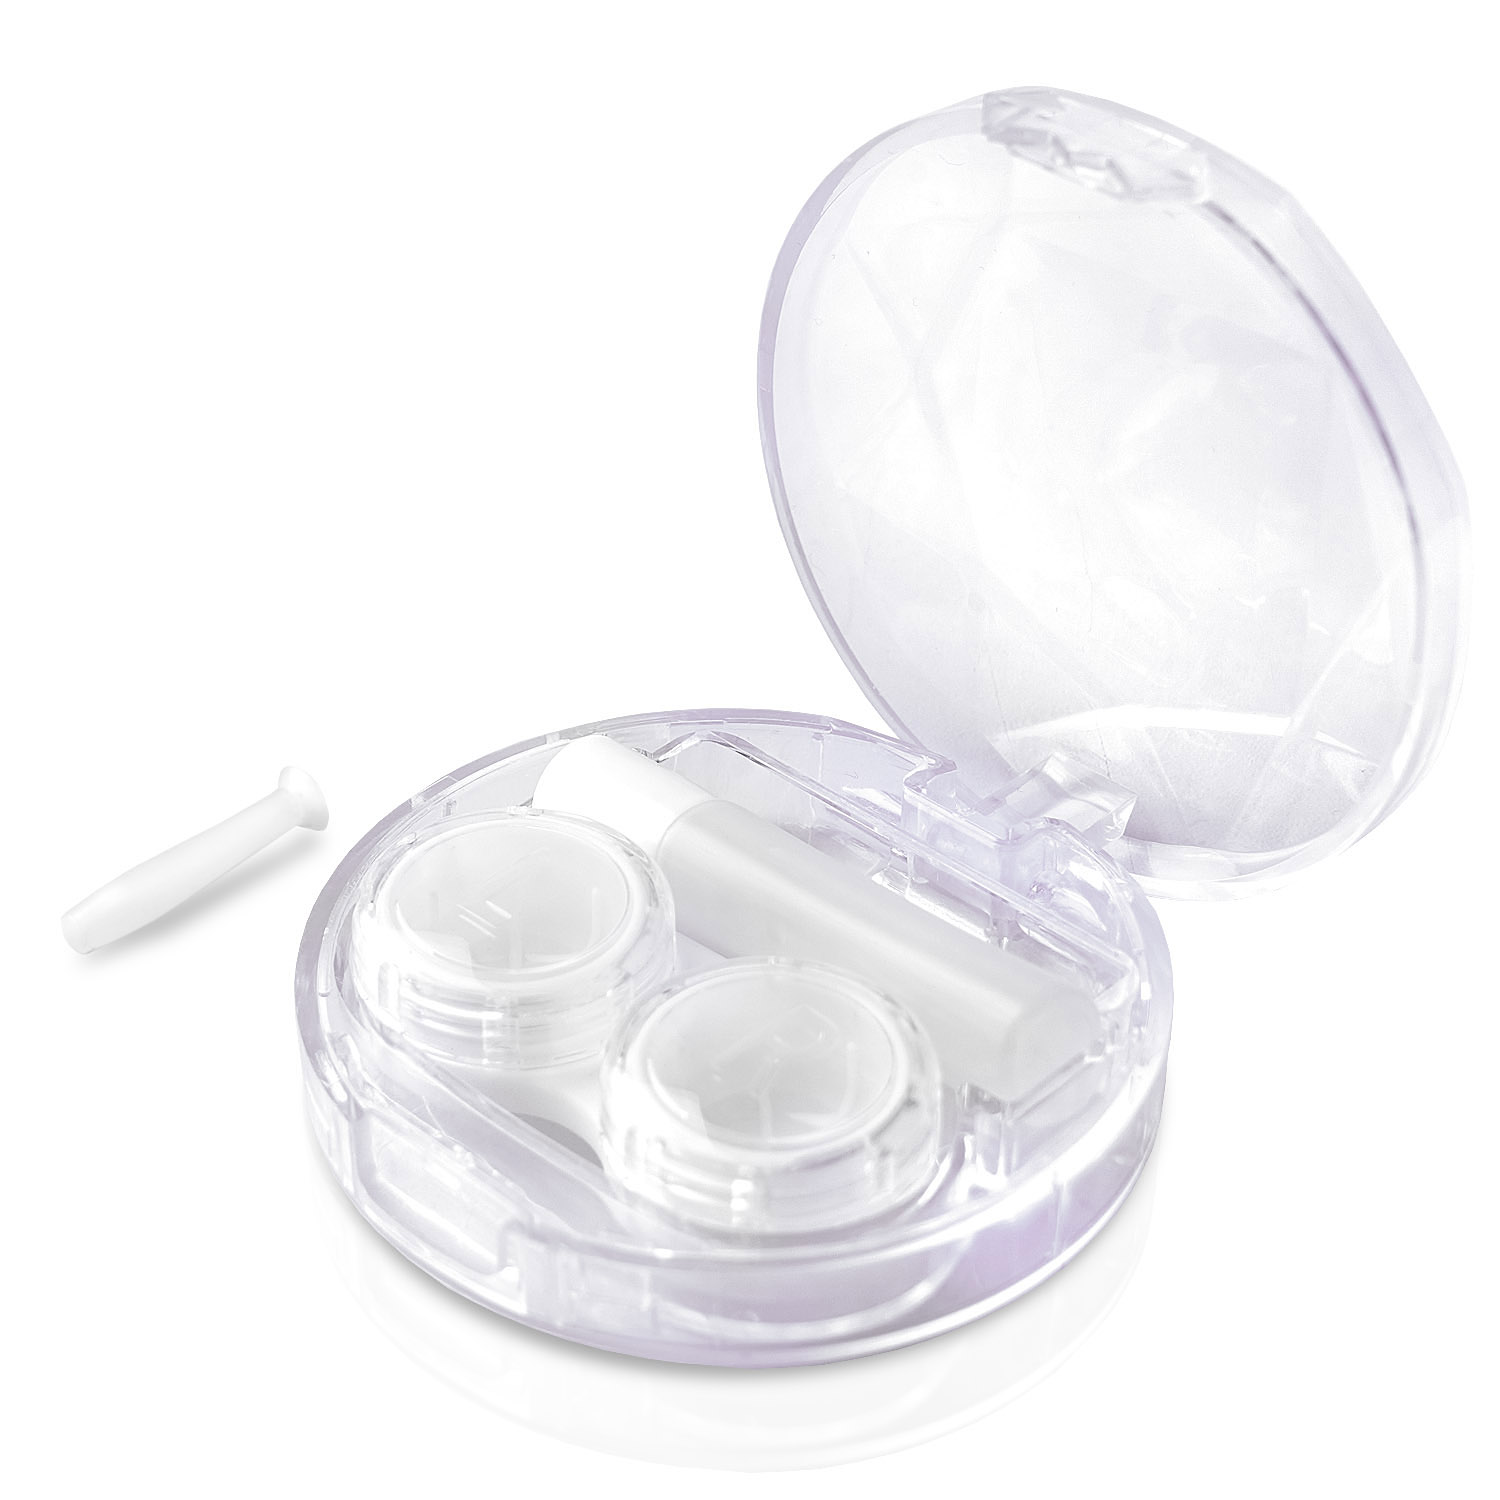 JB WHITE 4in1 harte Travel Linsensauger, Lösung-Behältnis und Kontaktlinsen Kit mit Set 4-in-1 Travel Kontaktlinsen für Behälter(L+R), Case